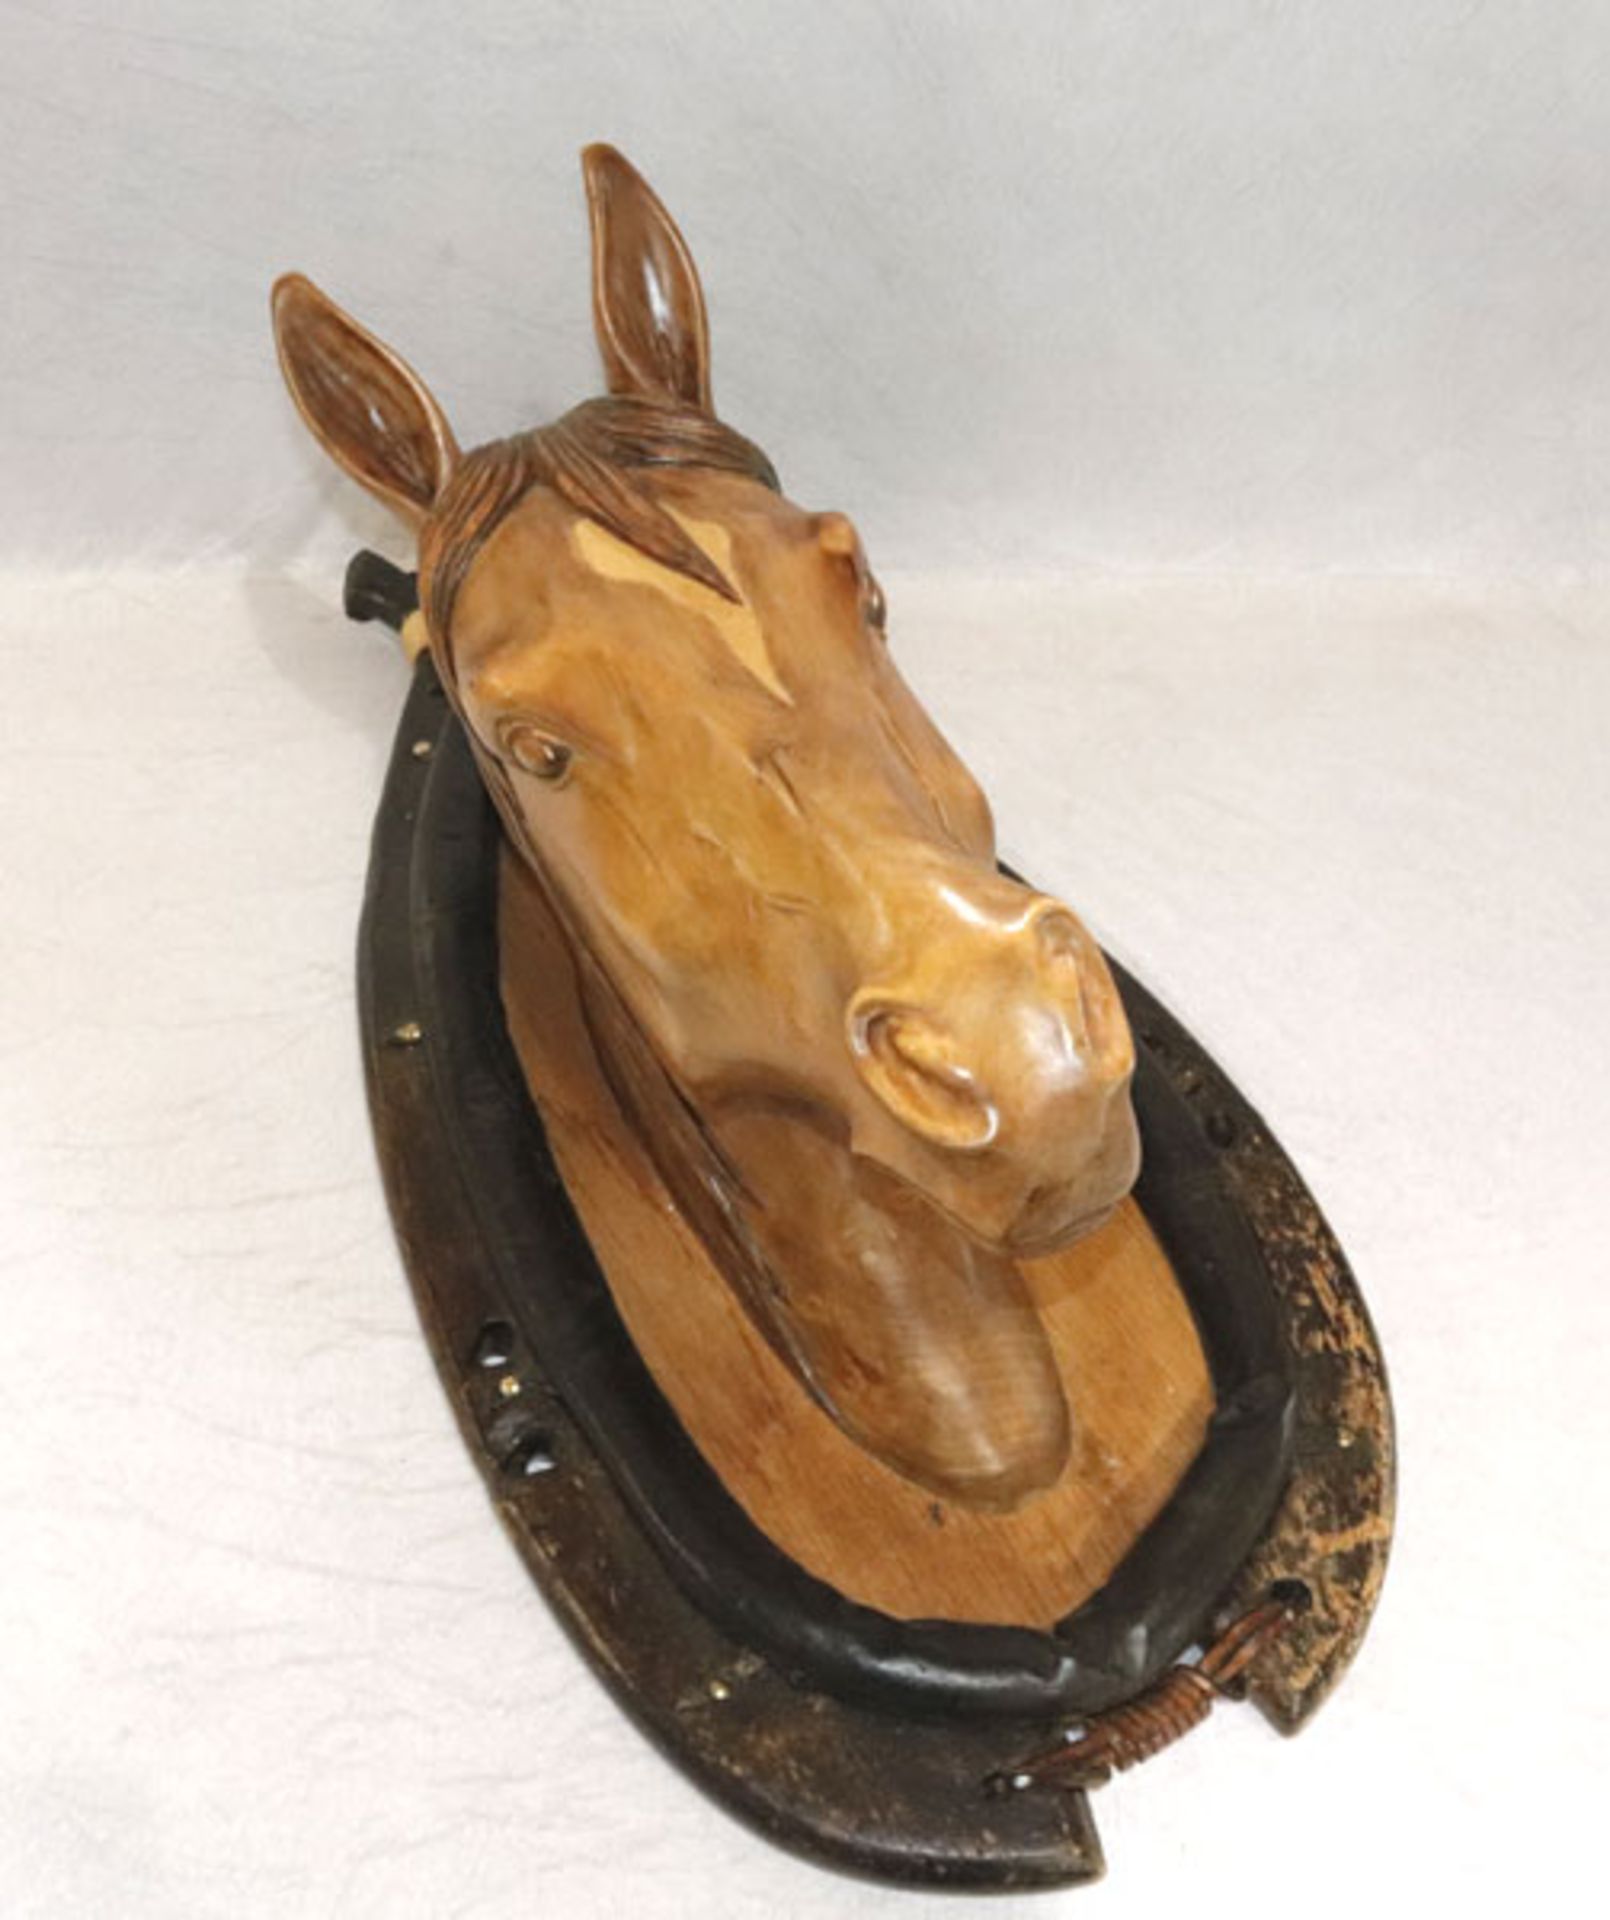 Holz Skulptur 'Pferdekopf in Kummet montiert', schöne Handarbeit, H 80 cm, B 42 cm, T 40 cm,